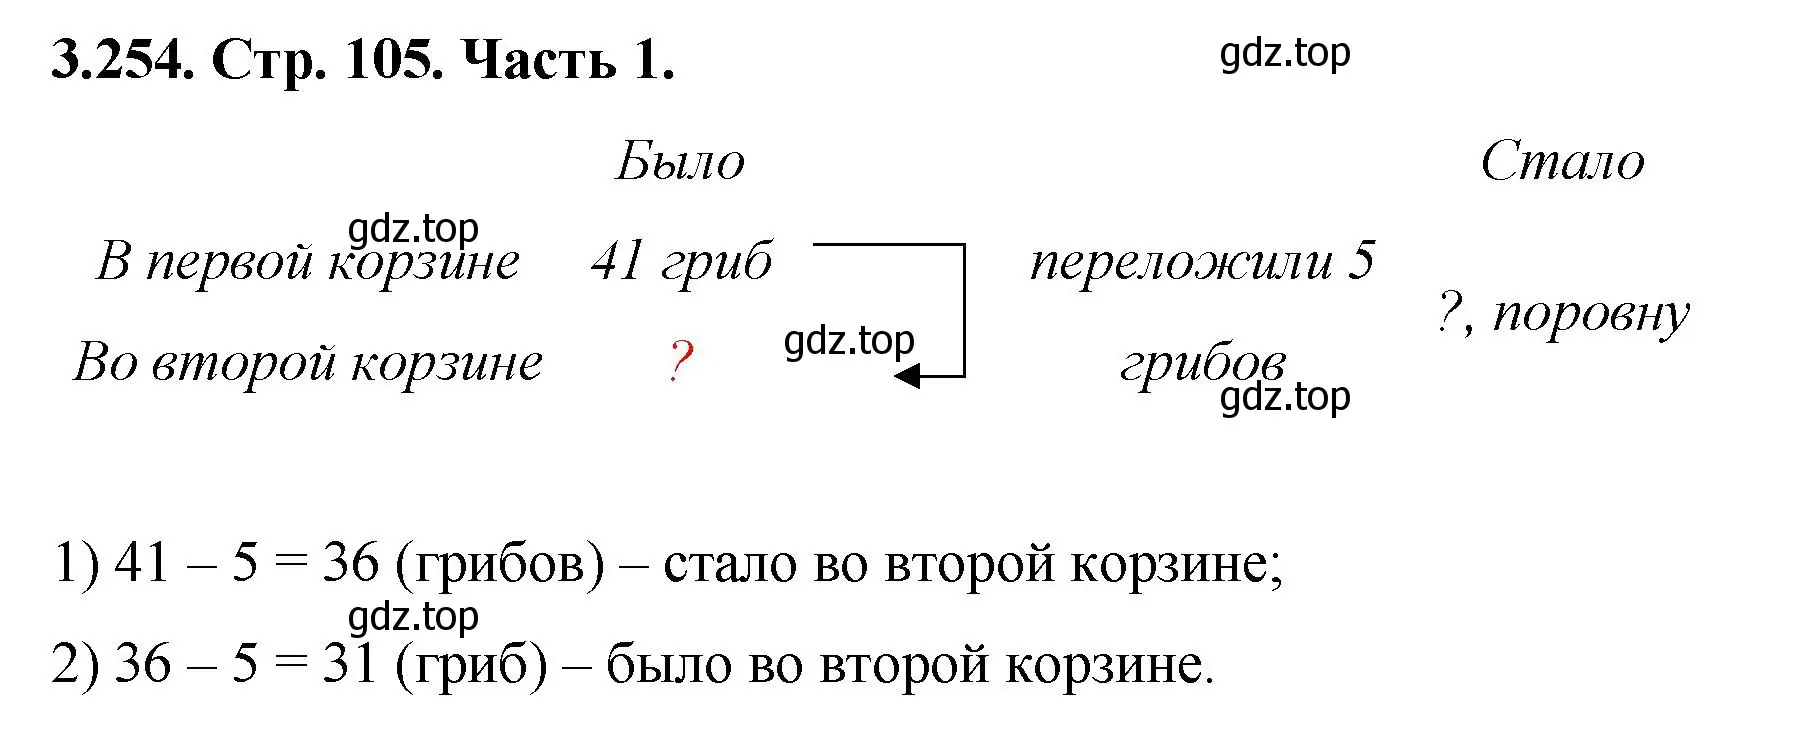 Решение номер 3.254 (страница 105) гдз по математике 5 класс Виленкин, Жохов, учебник 1 часть